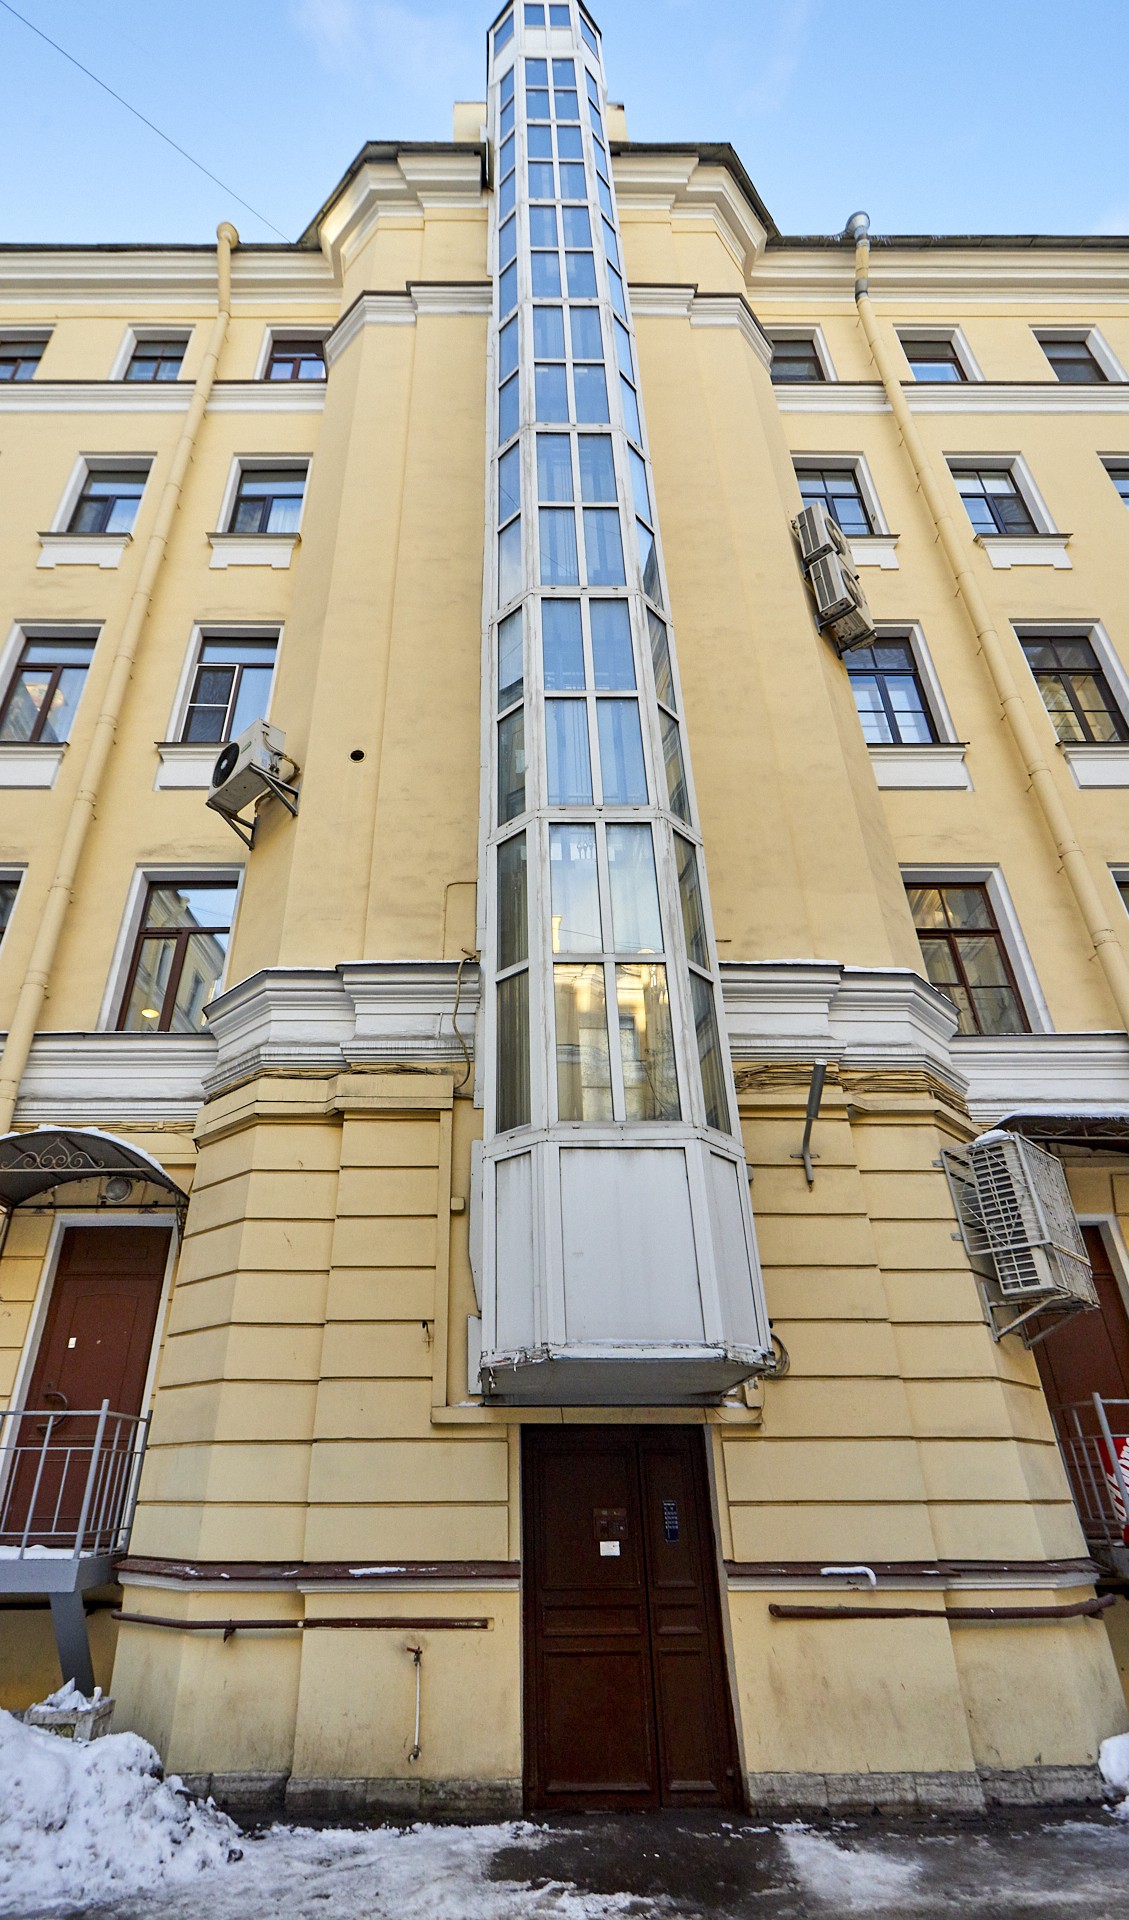 г. Санкт-Петербург, ул. Шпалерная, д. 34, лит. Б - фасад здания